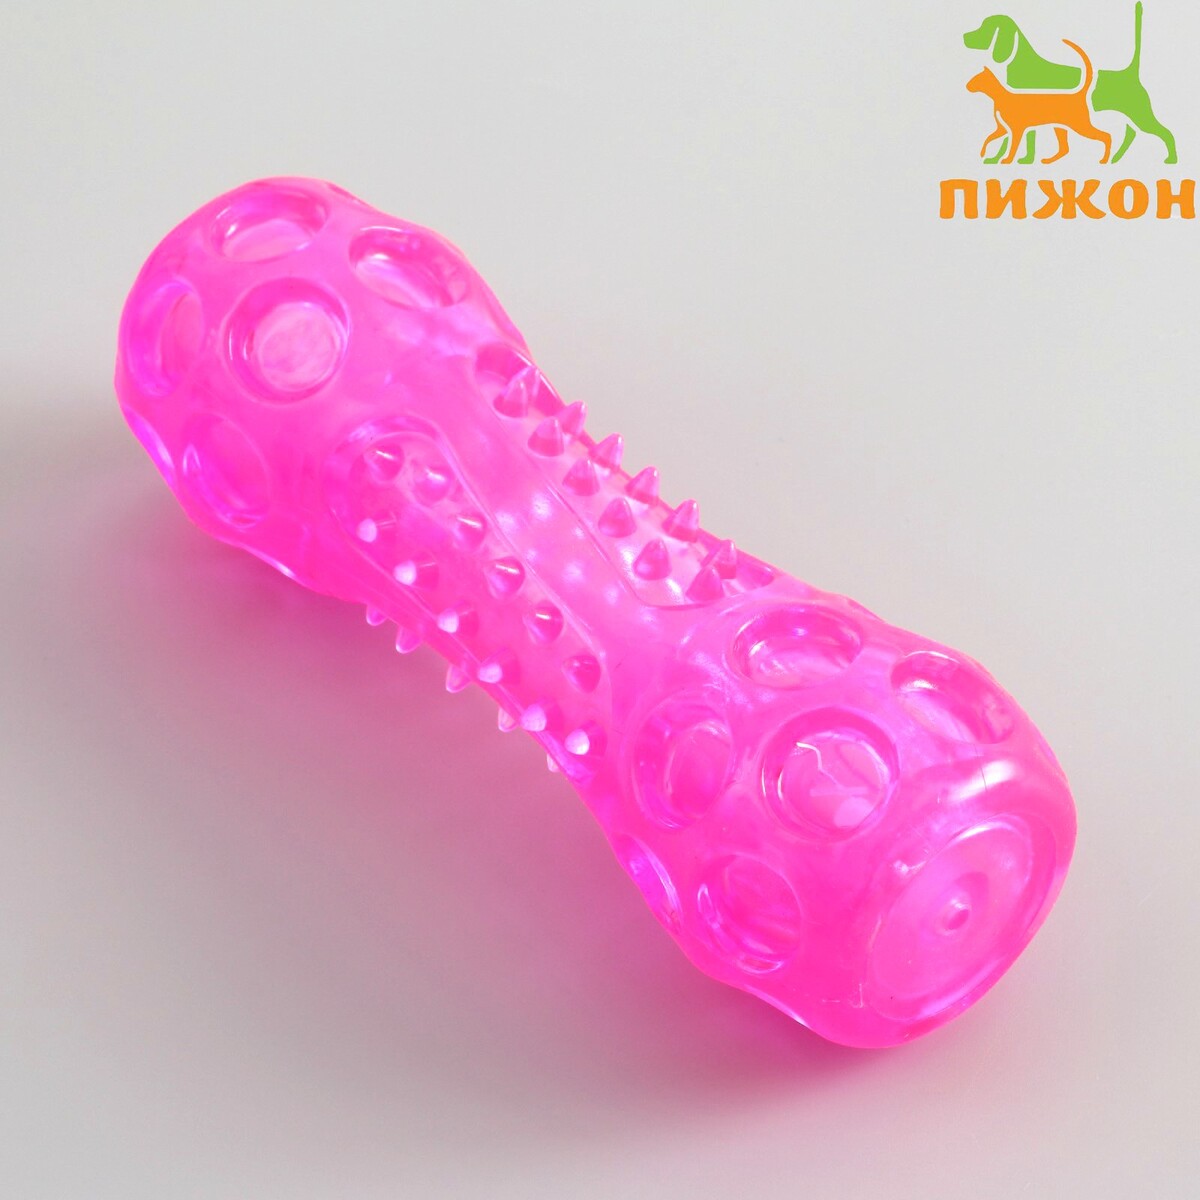 Игрушка-палка из термопластичной резины с утопленной пищалкой, розовая гимнастическая палка 3 кг the body bar bs bb03kg оранжевый